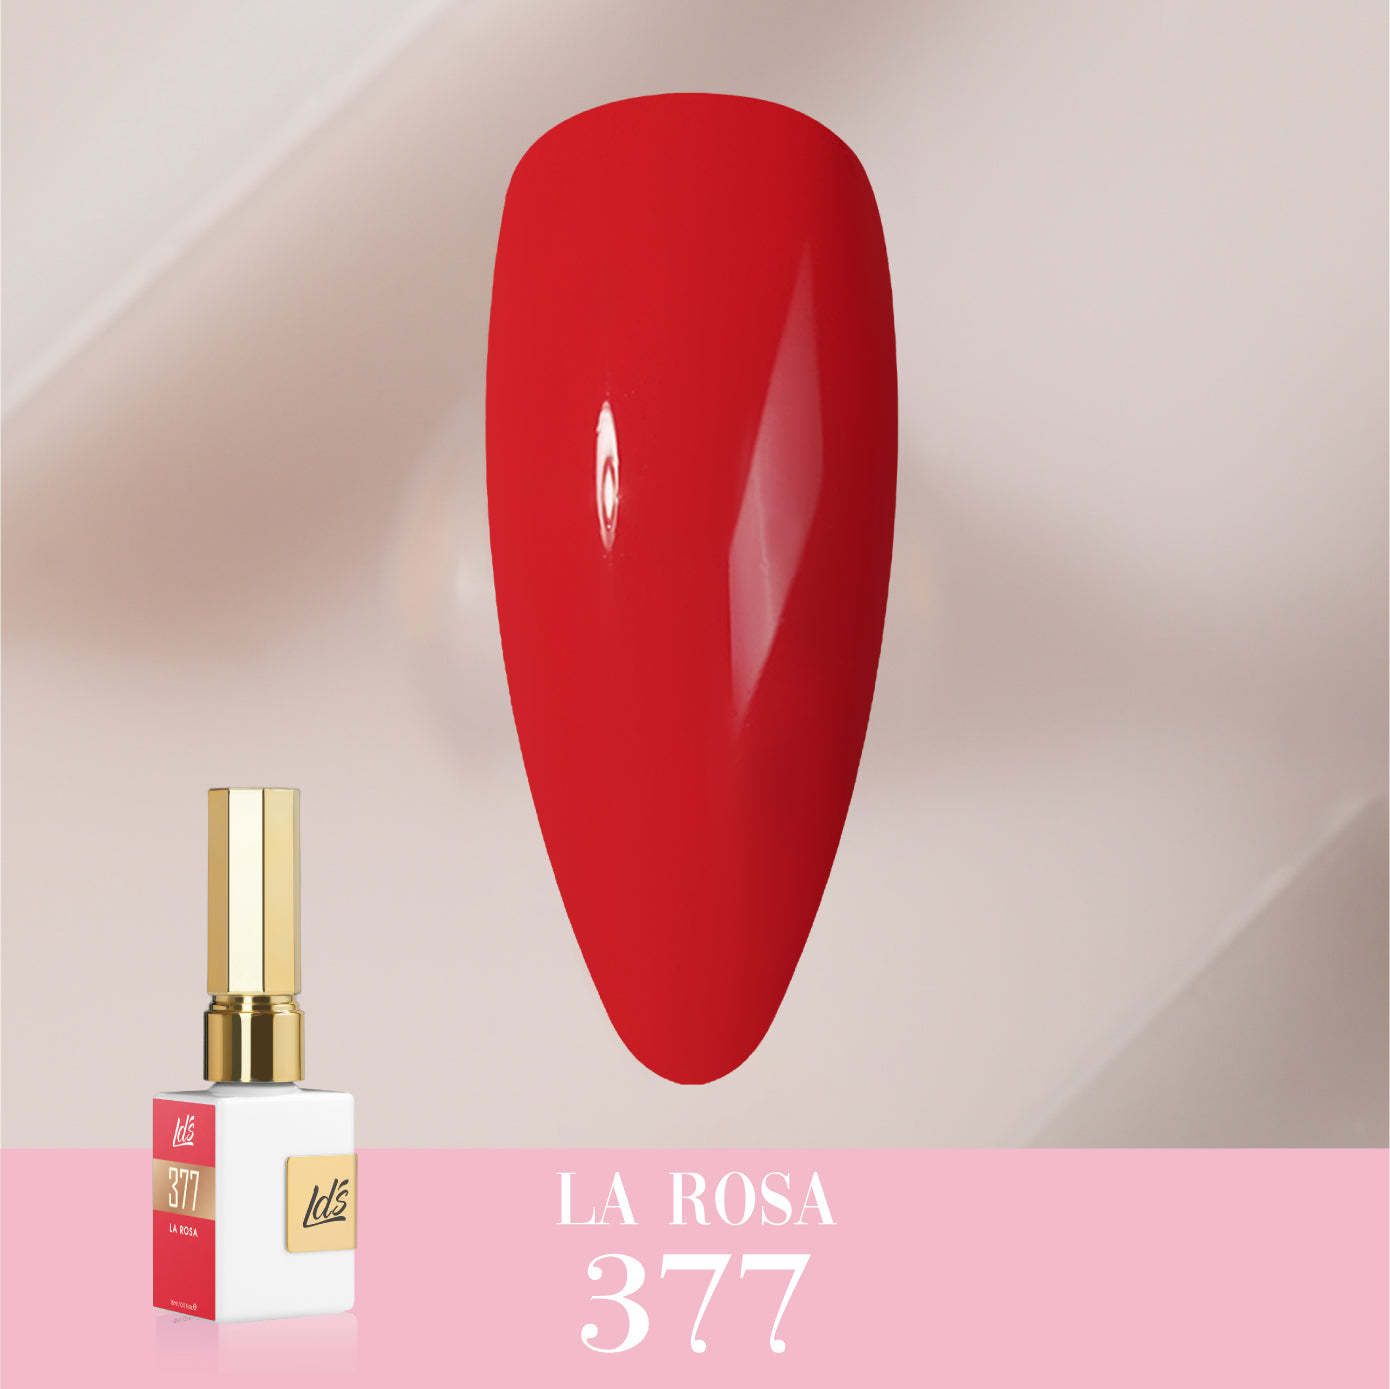 LDS Color Craze Collection - 377 La Rosa - Gel Polish 0.5oz